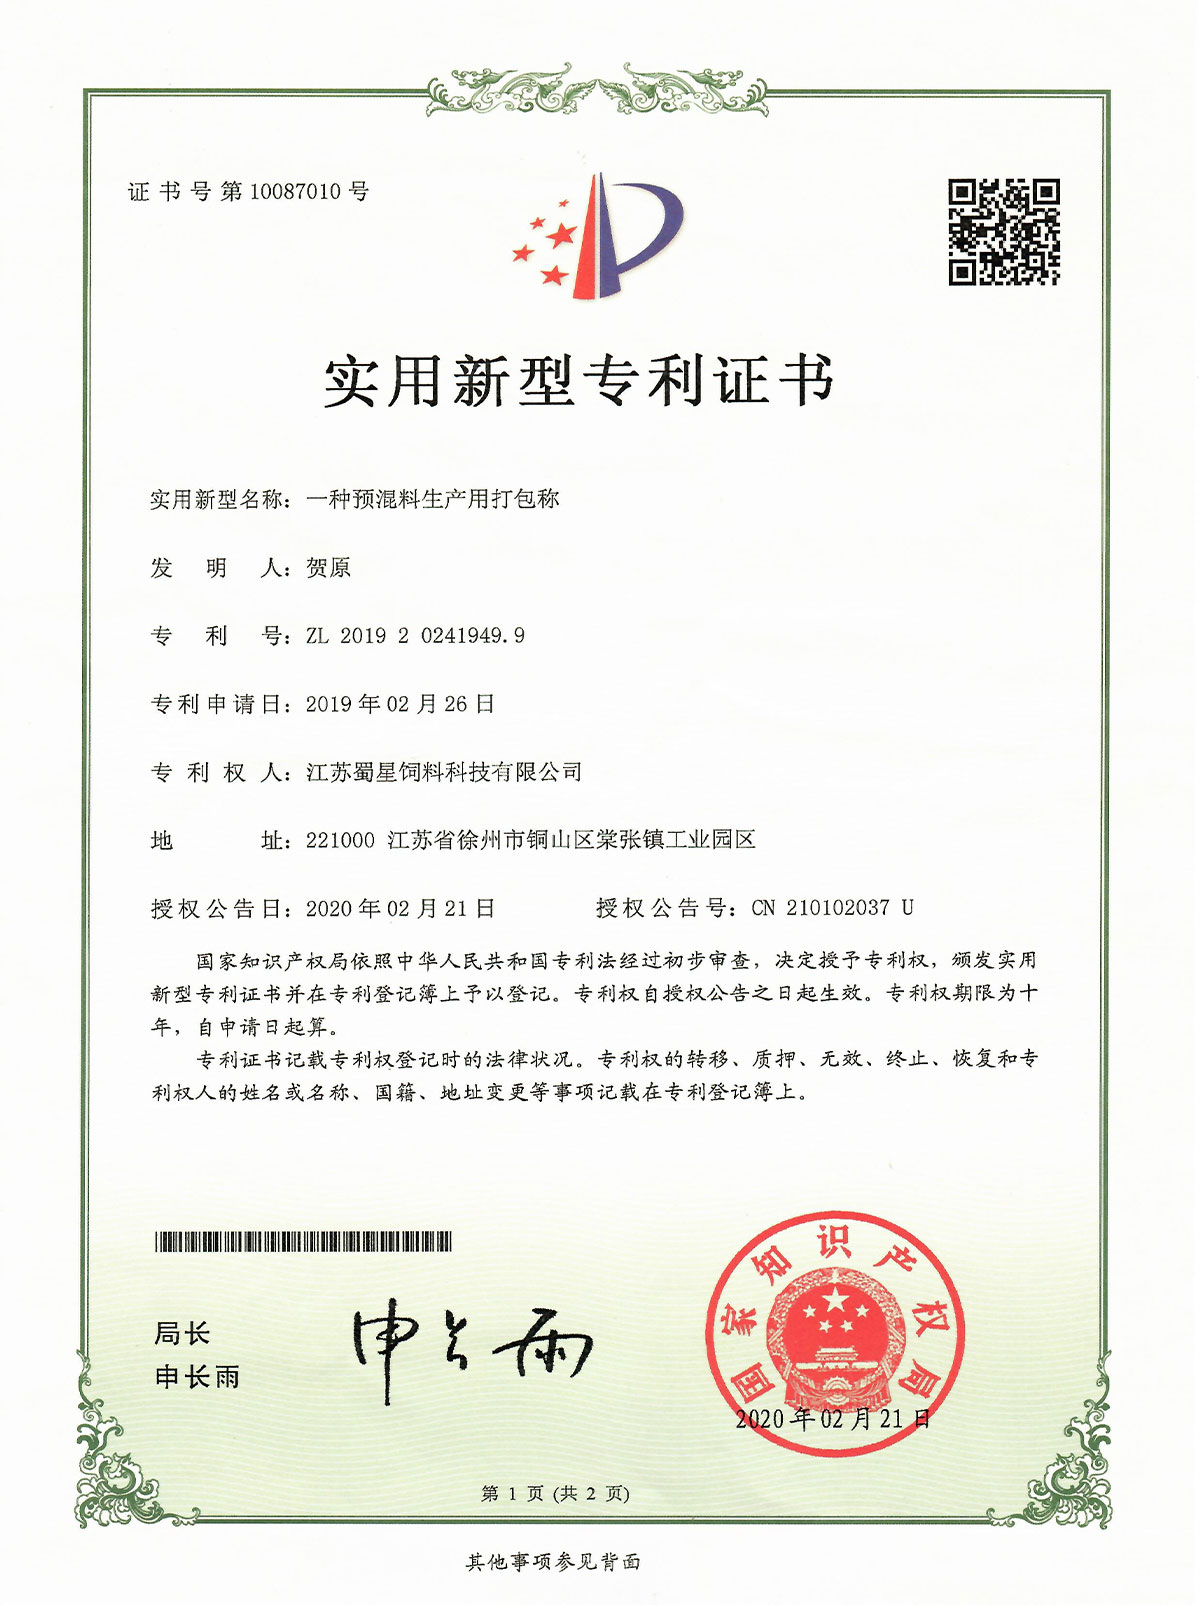 sertifikaten 2